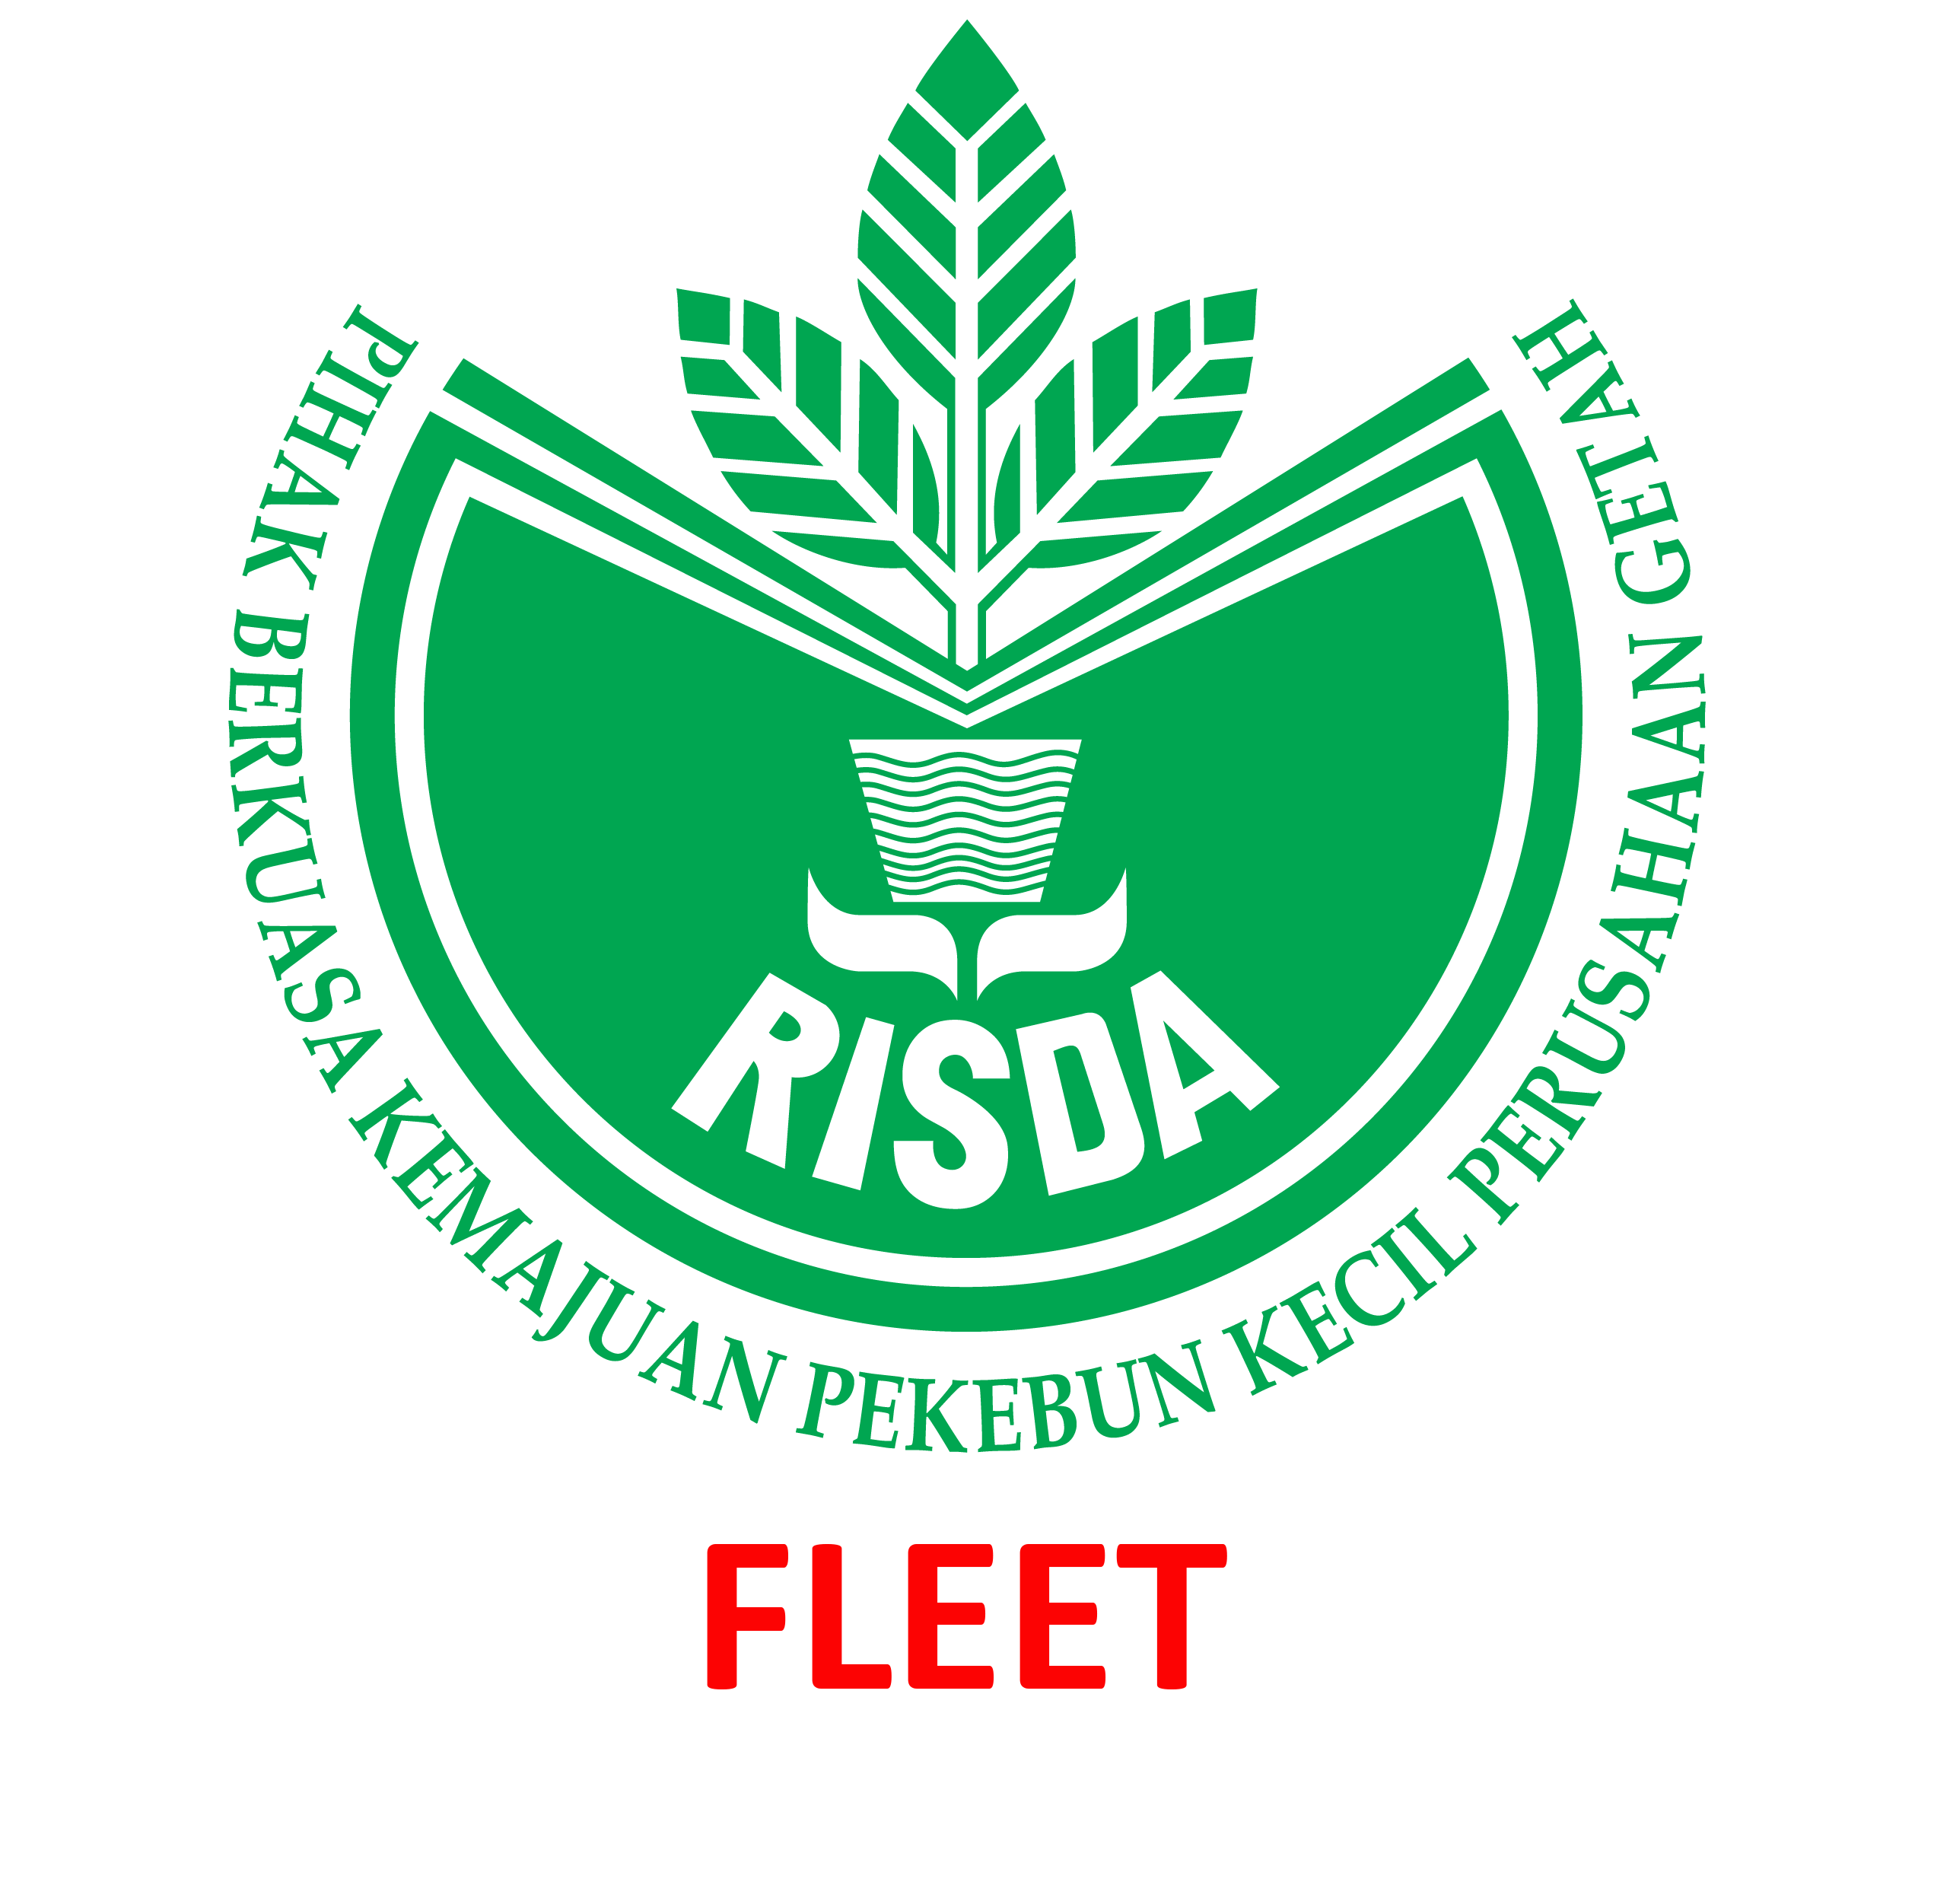 RISDA Fleet Sdn Bhd